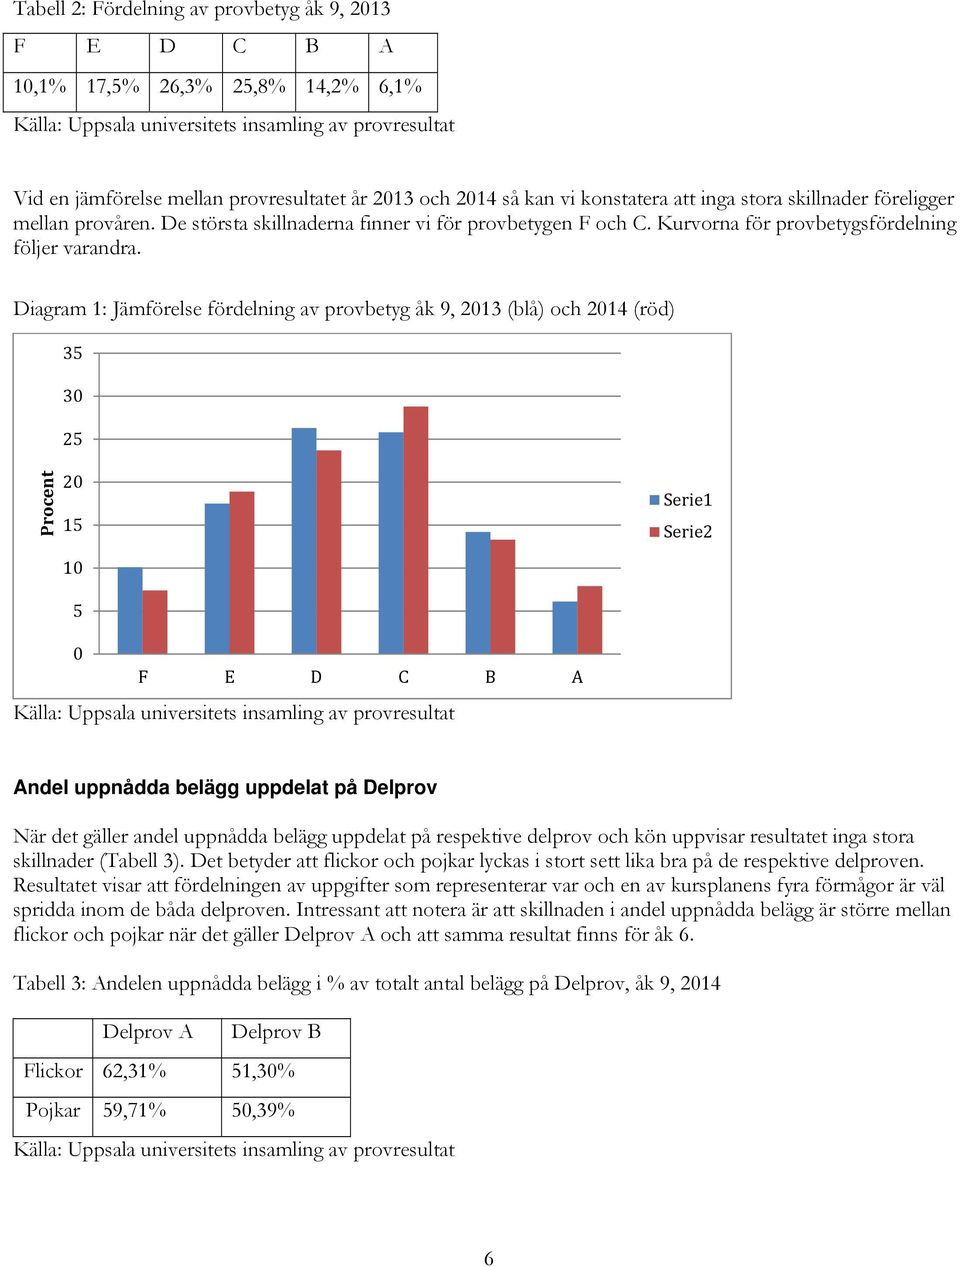 Diagram 1: Jämförelse fördelning av provbetyg åk 9, 2013 (blå) och 2014 (röd) 35 30 25 Procent 20 15 10 5 Serie1 Serie2 0 F E D C B A Andel uppnådda belägg uppdelat på Delprov När det gäller andel